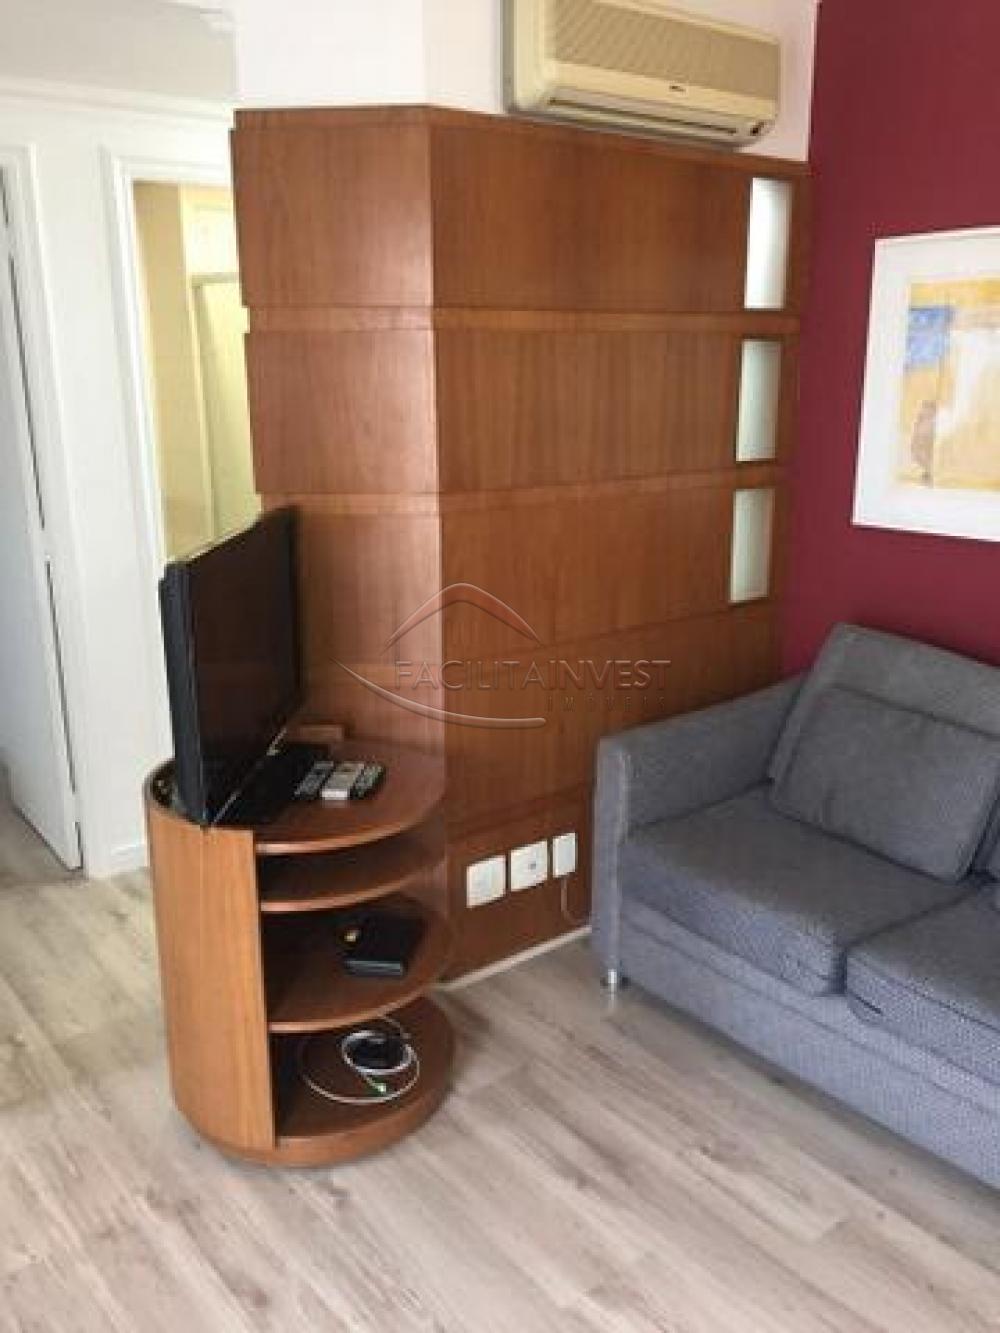 Comprar Apartamentos / Apartamento/ Flat Mobiliado em São Paulo R$ 455.000,00 - Foto 4